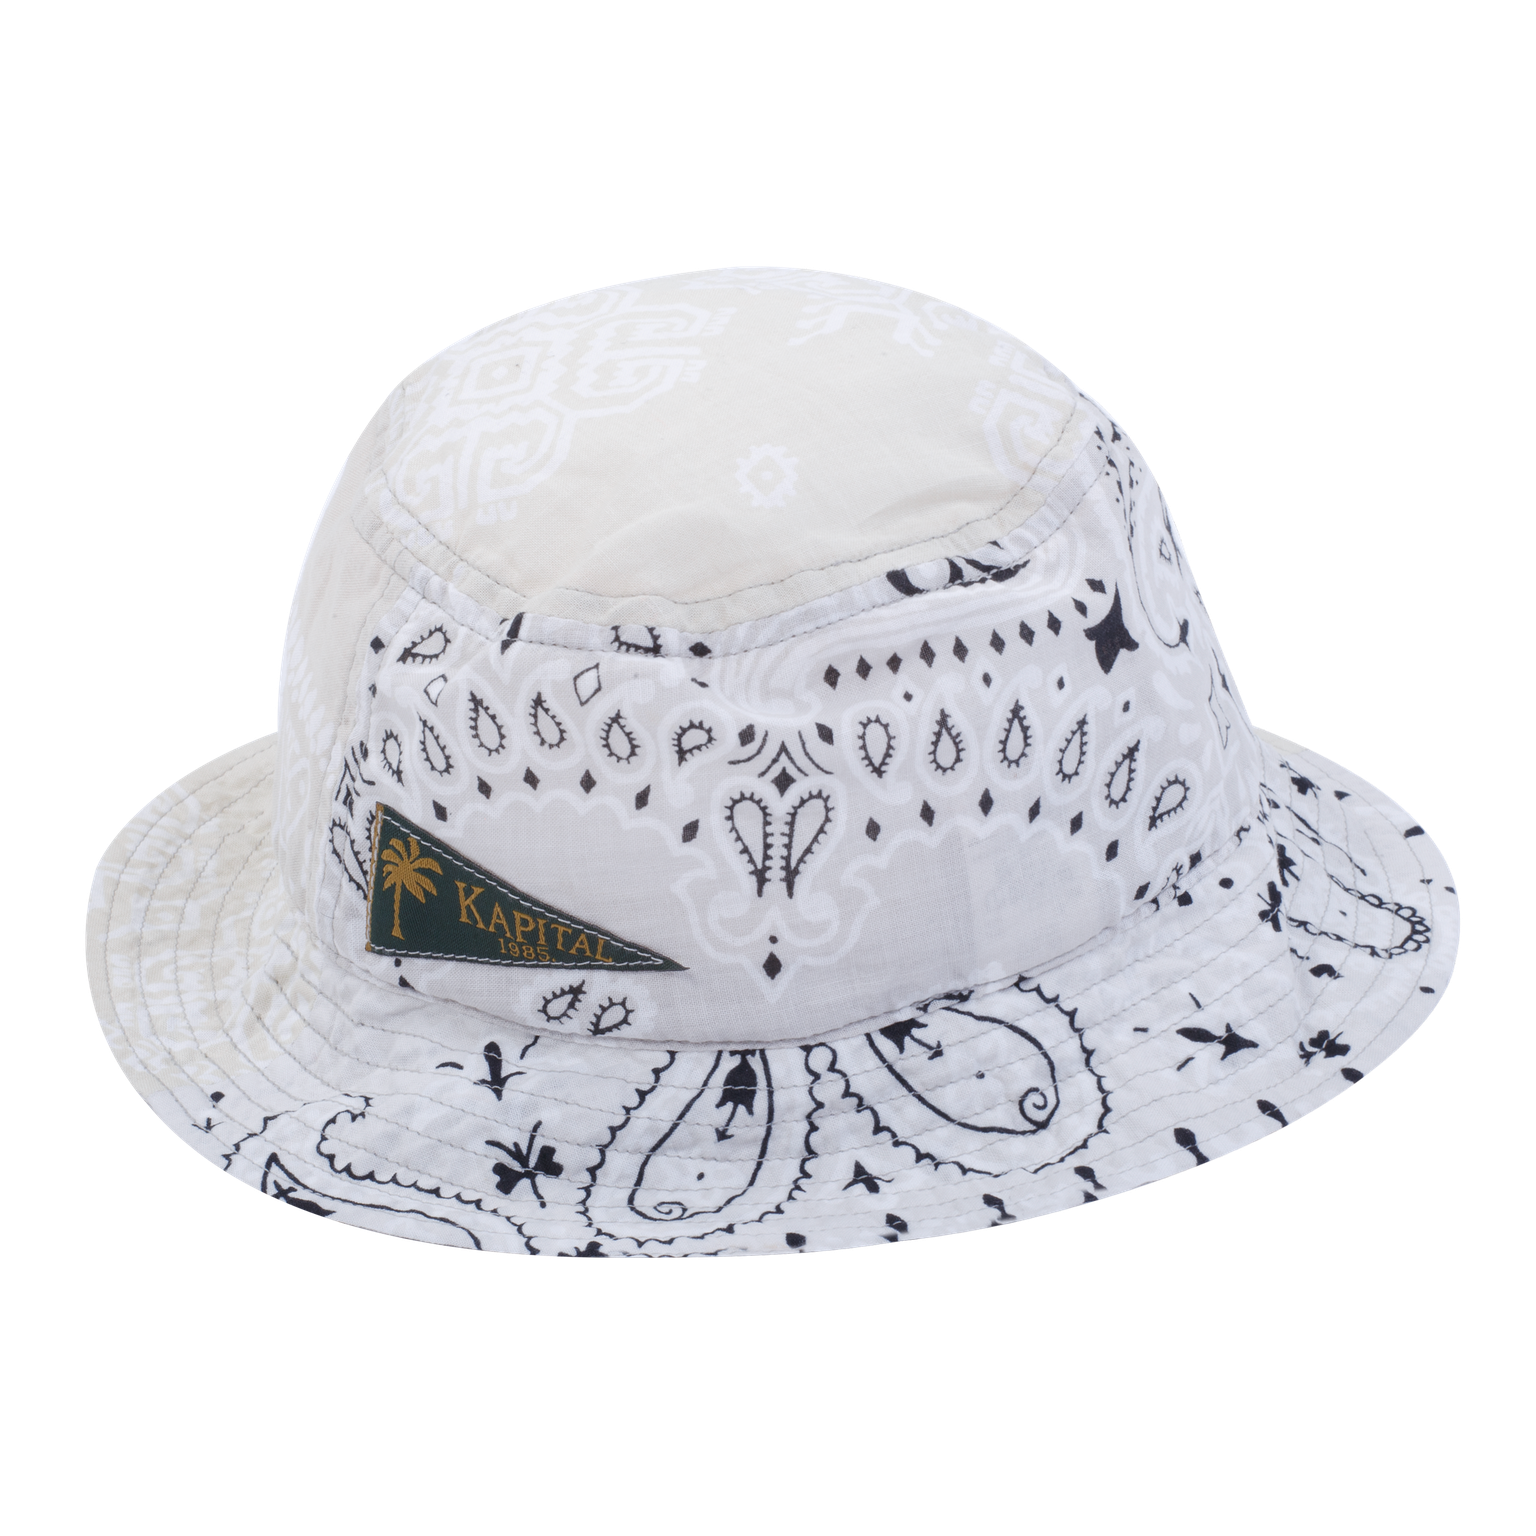 Bucket Hat White / Os